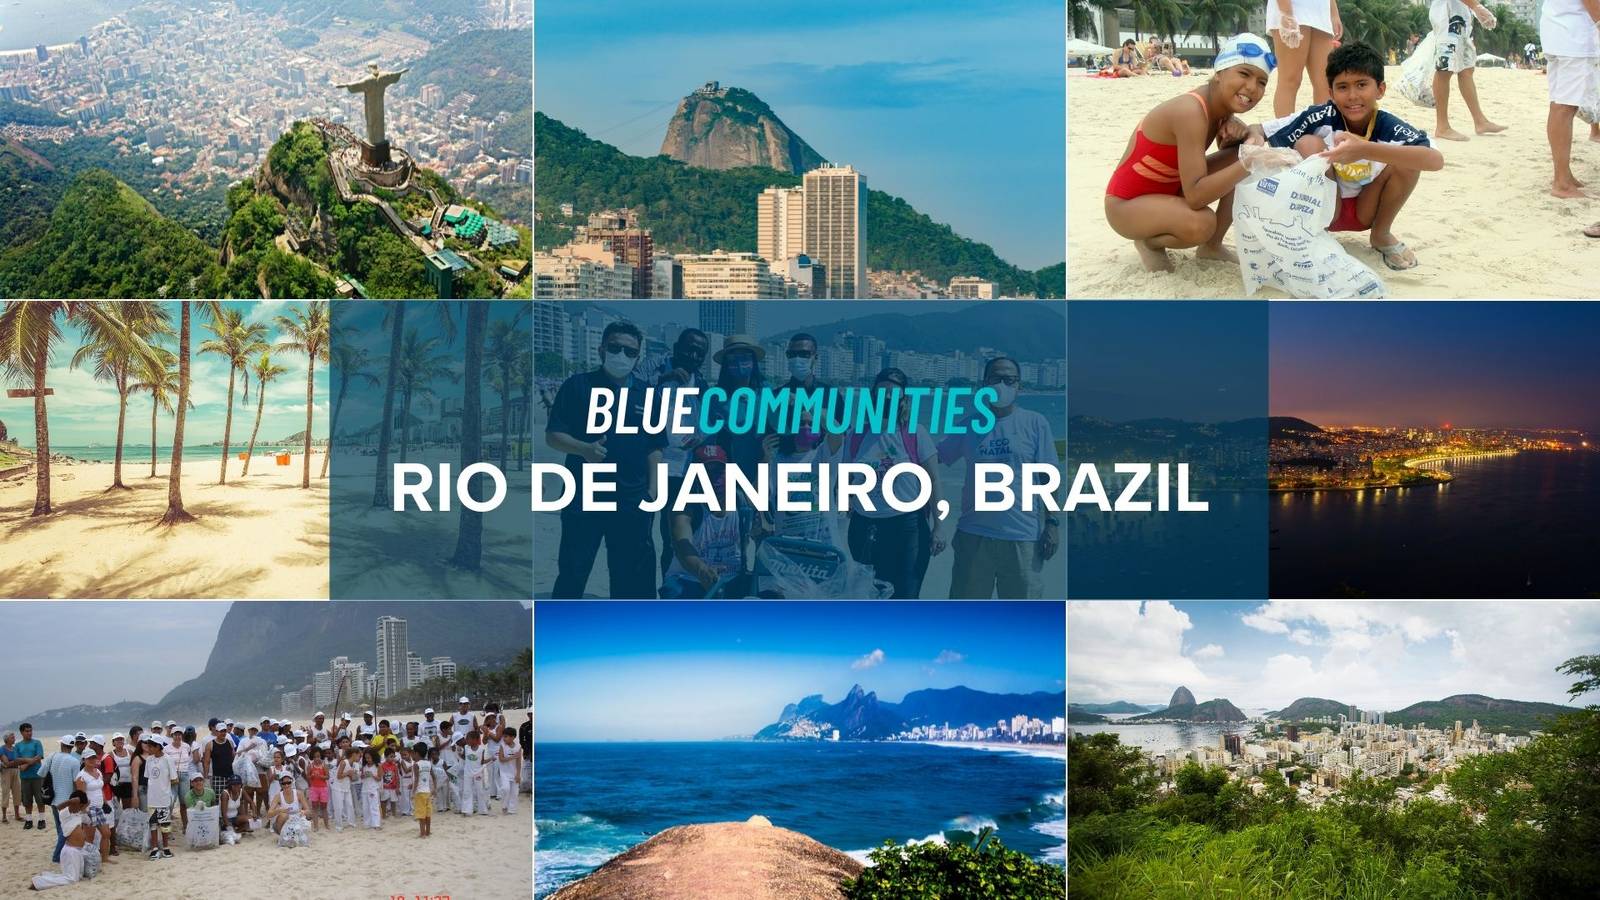 The Beaches of Rio de Janeiro - Rio de Janeiro 